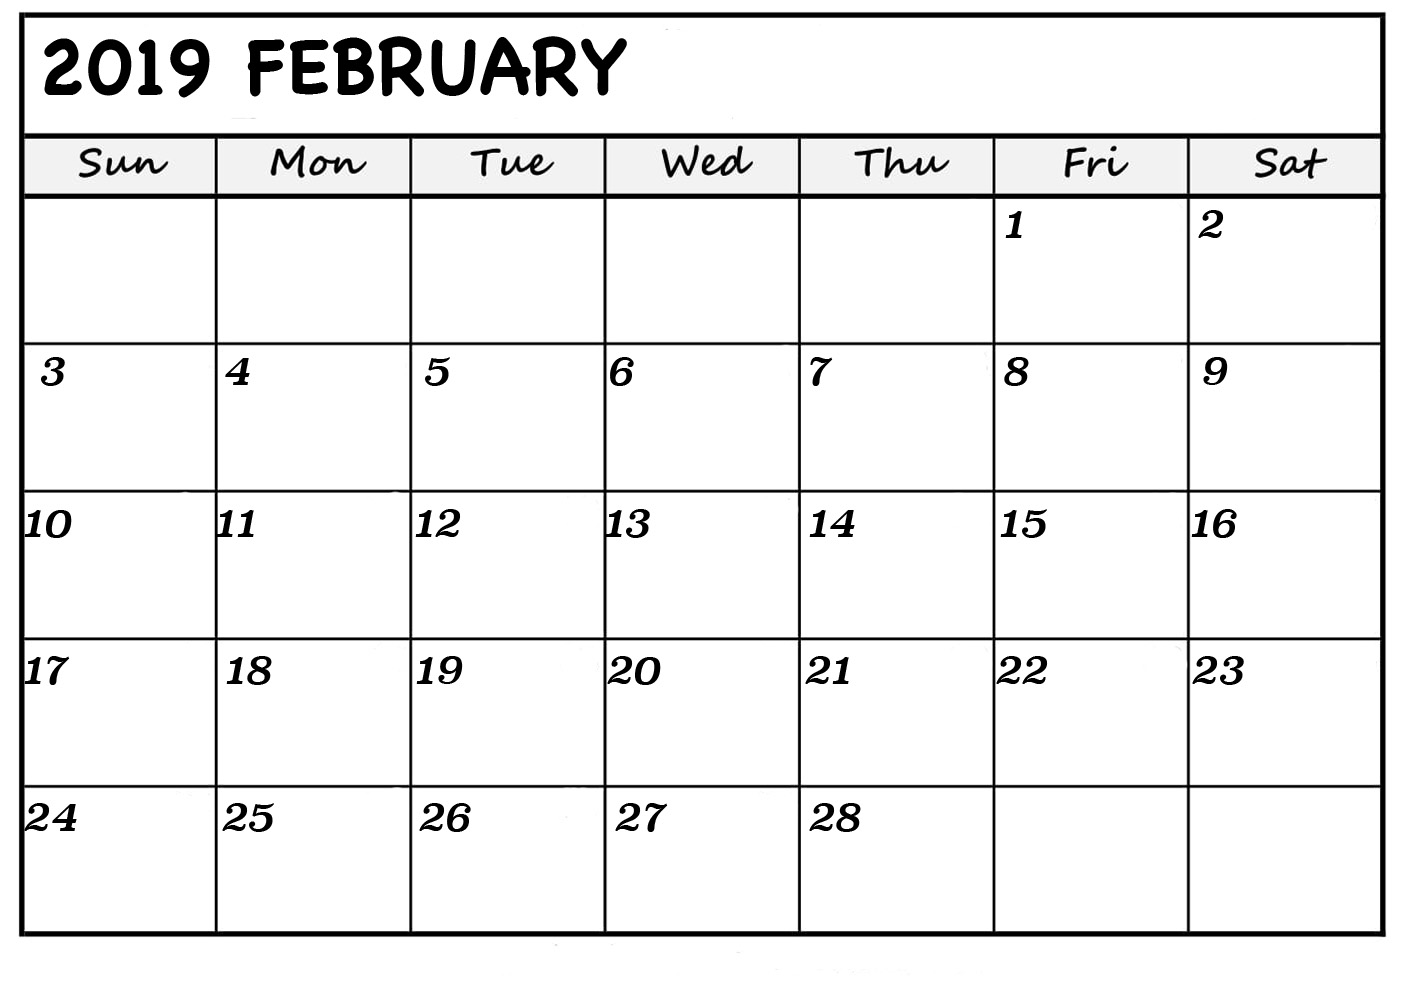 February 2019 Calendar Date